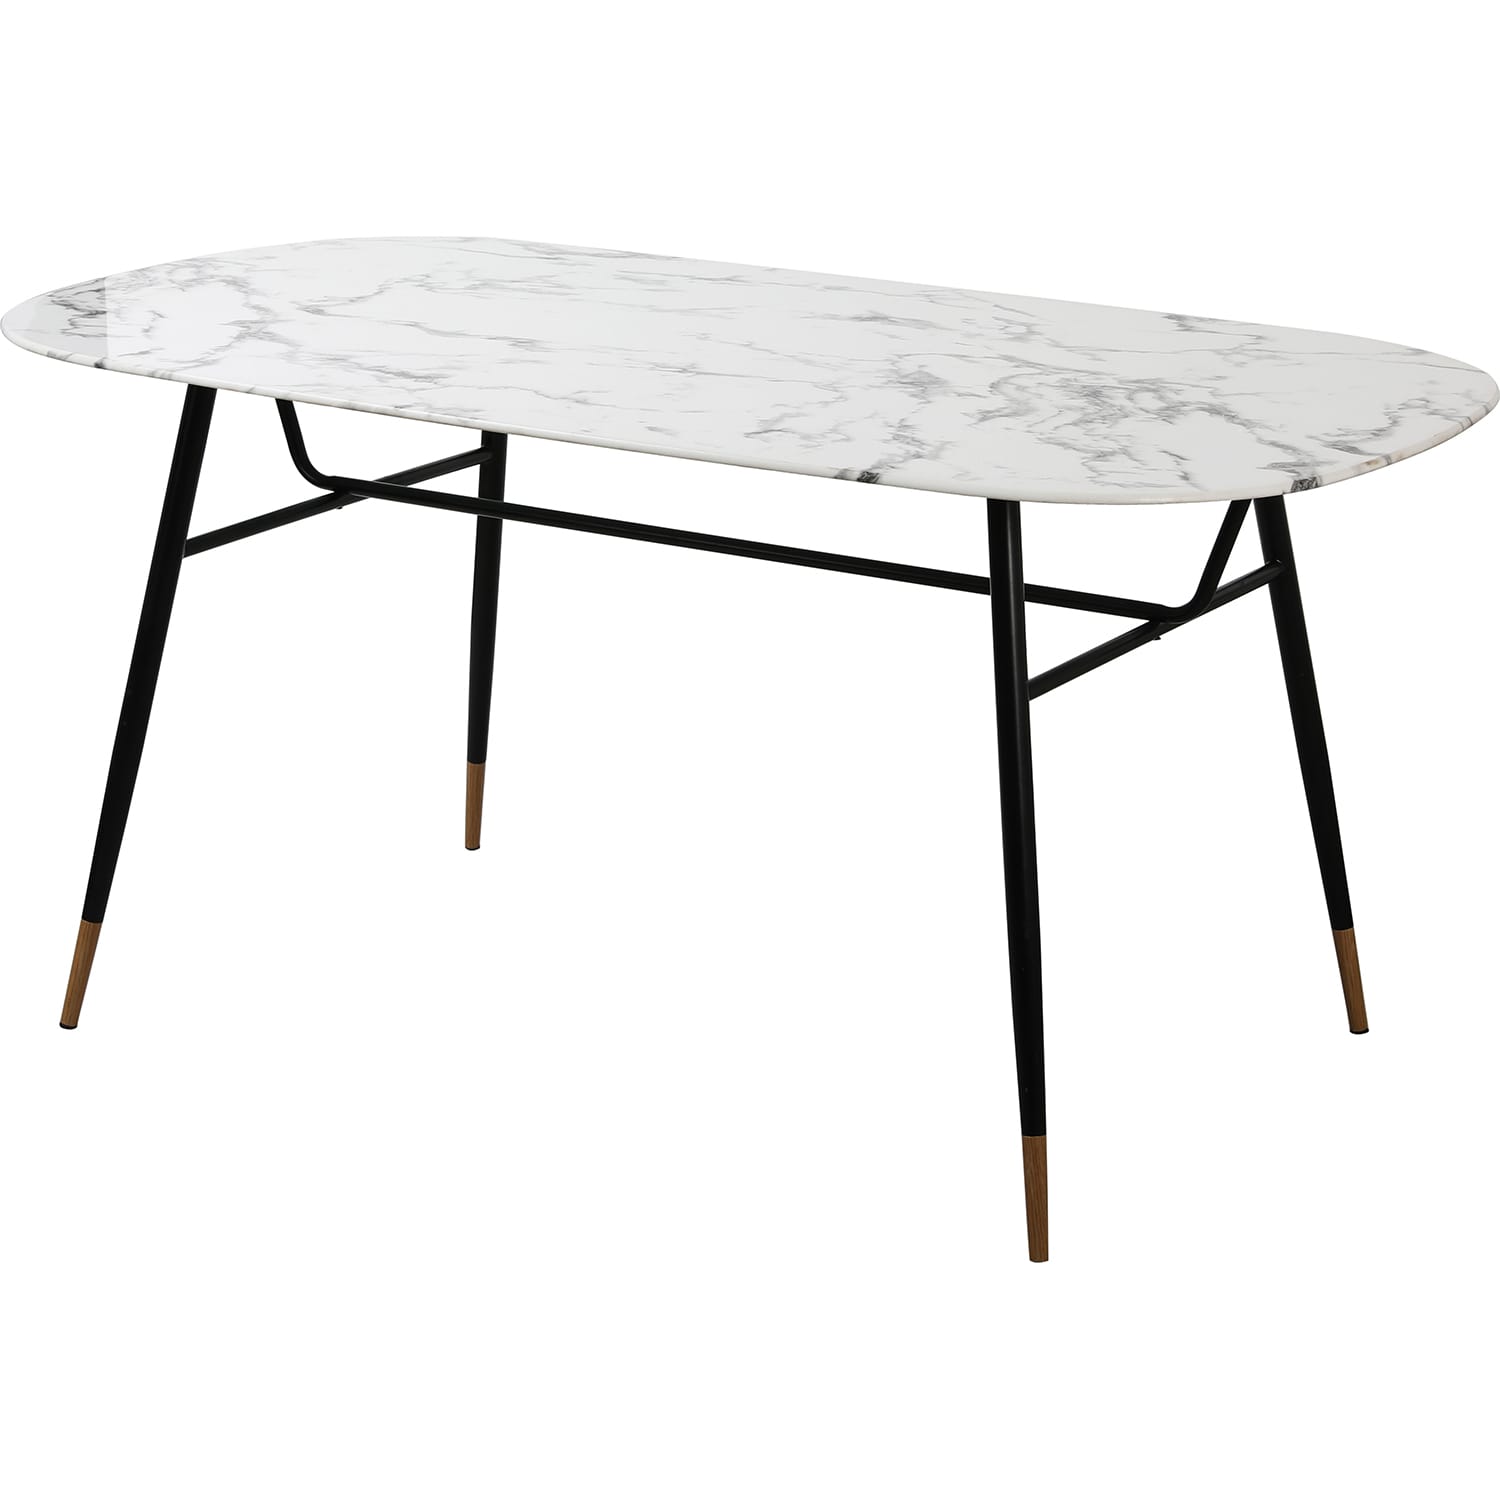 Möbel | Glas Esstische Tische weiss 160 | | Metall Glastische | Tisch möbel mutoni |